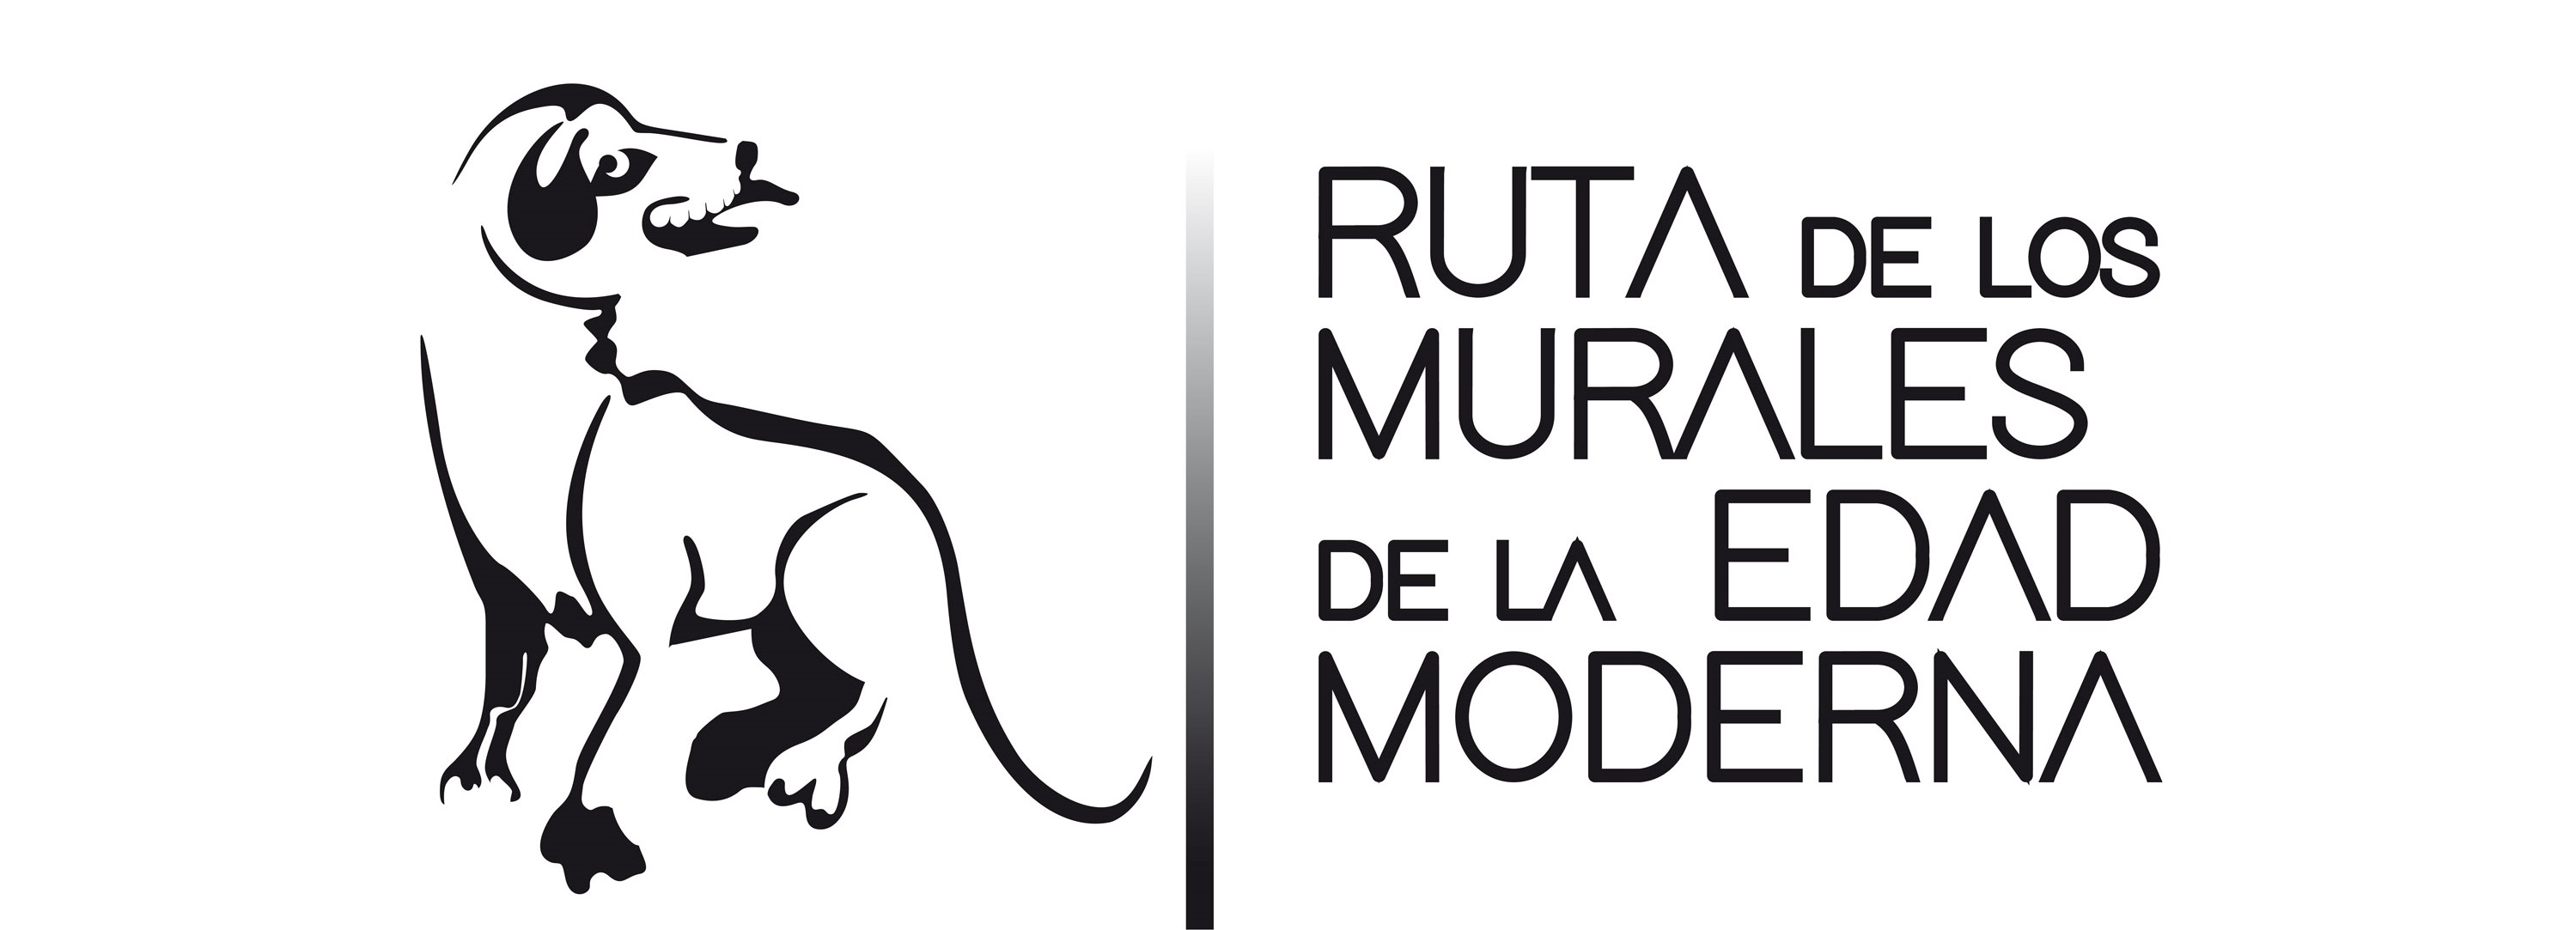 Logotipo de la Ruta de los murales de la Edad Moderna